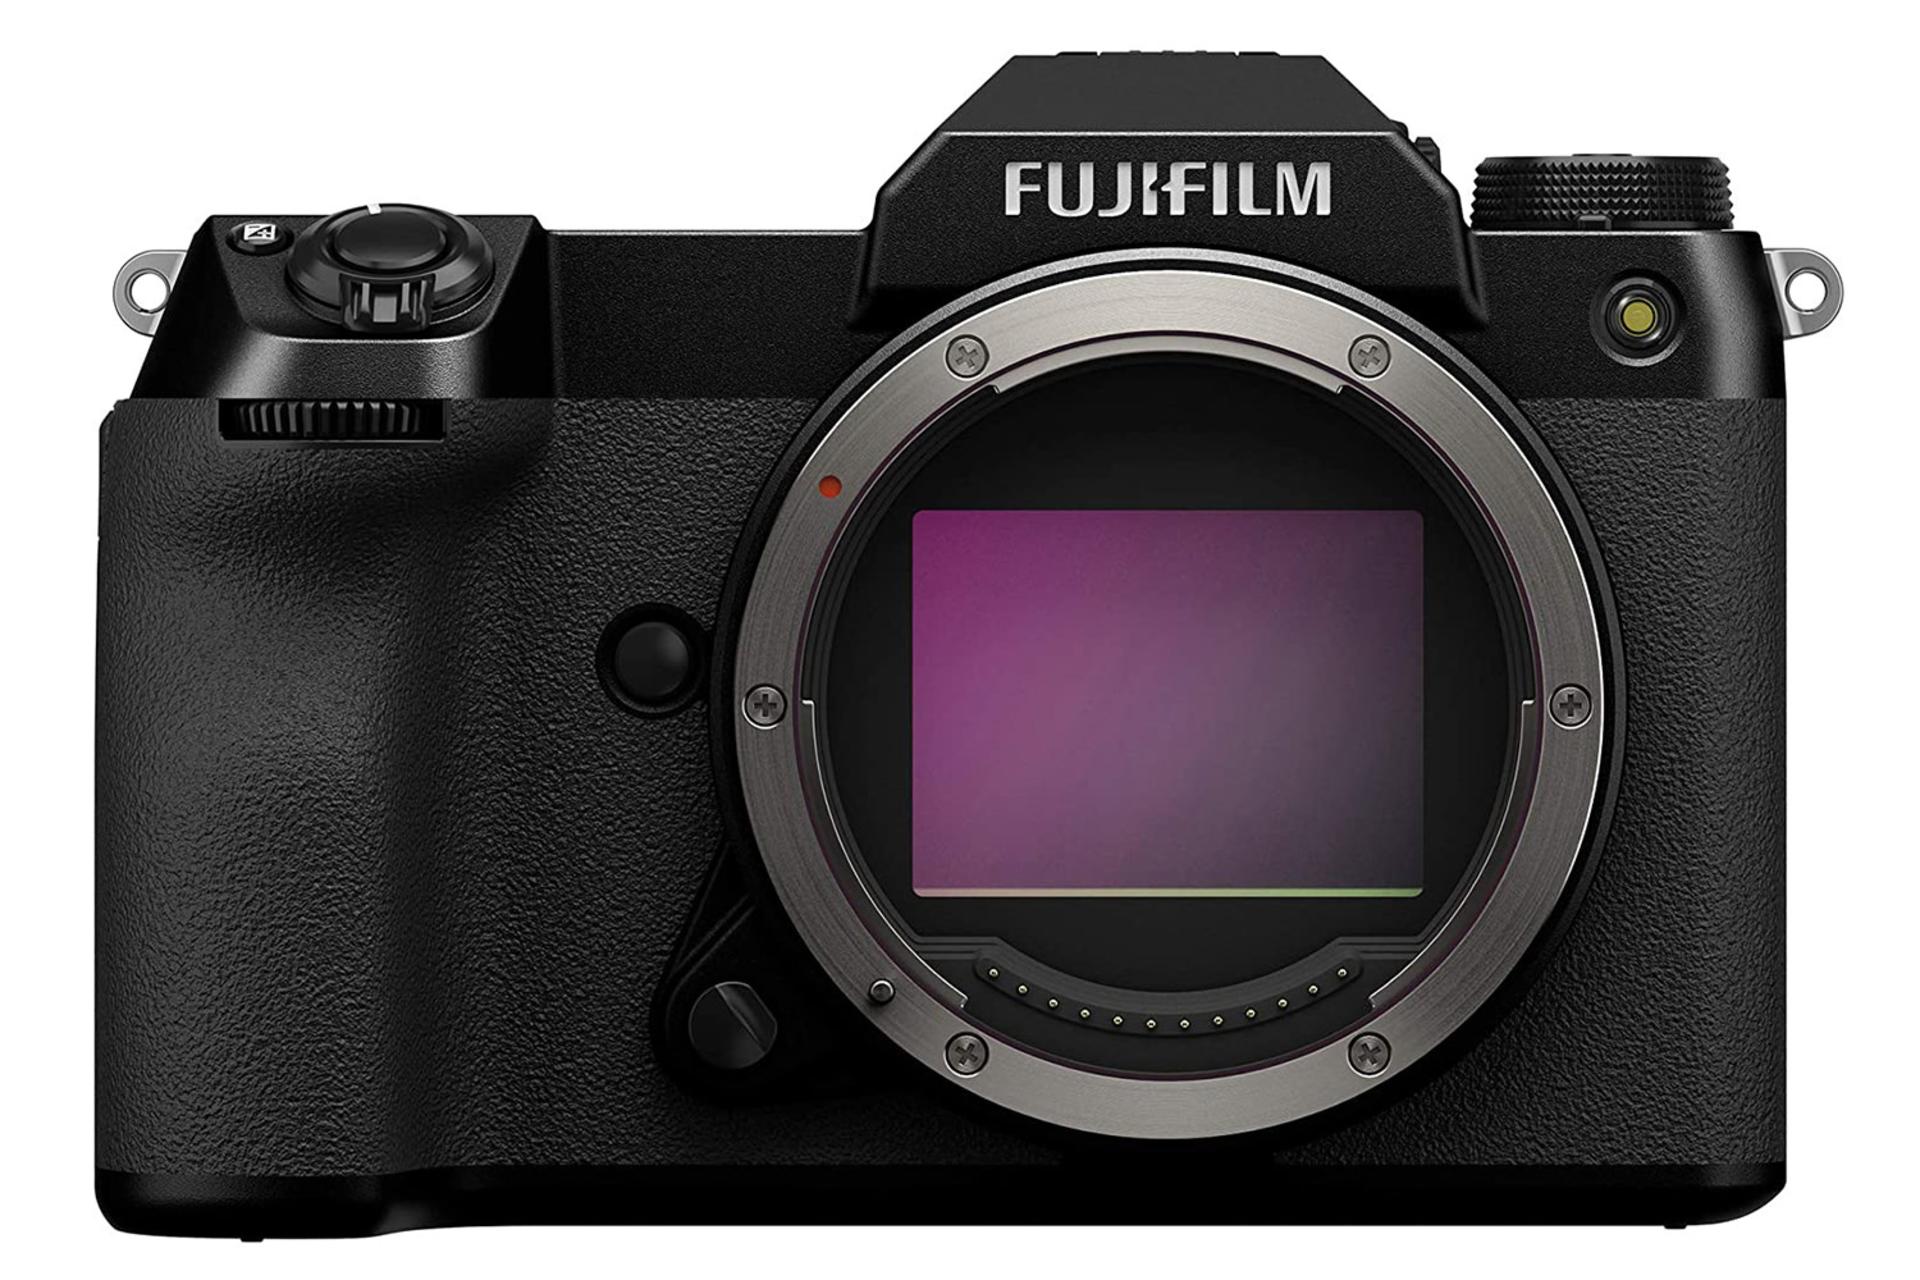 مرجع متخصصين ايران دوربين فوجي فيلم Fujifilm GFX 100S